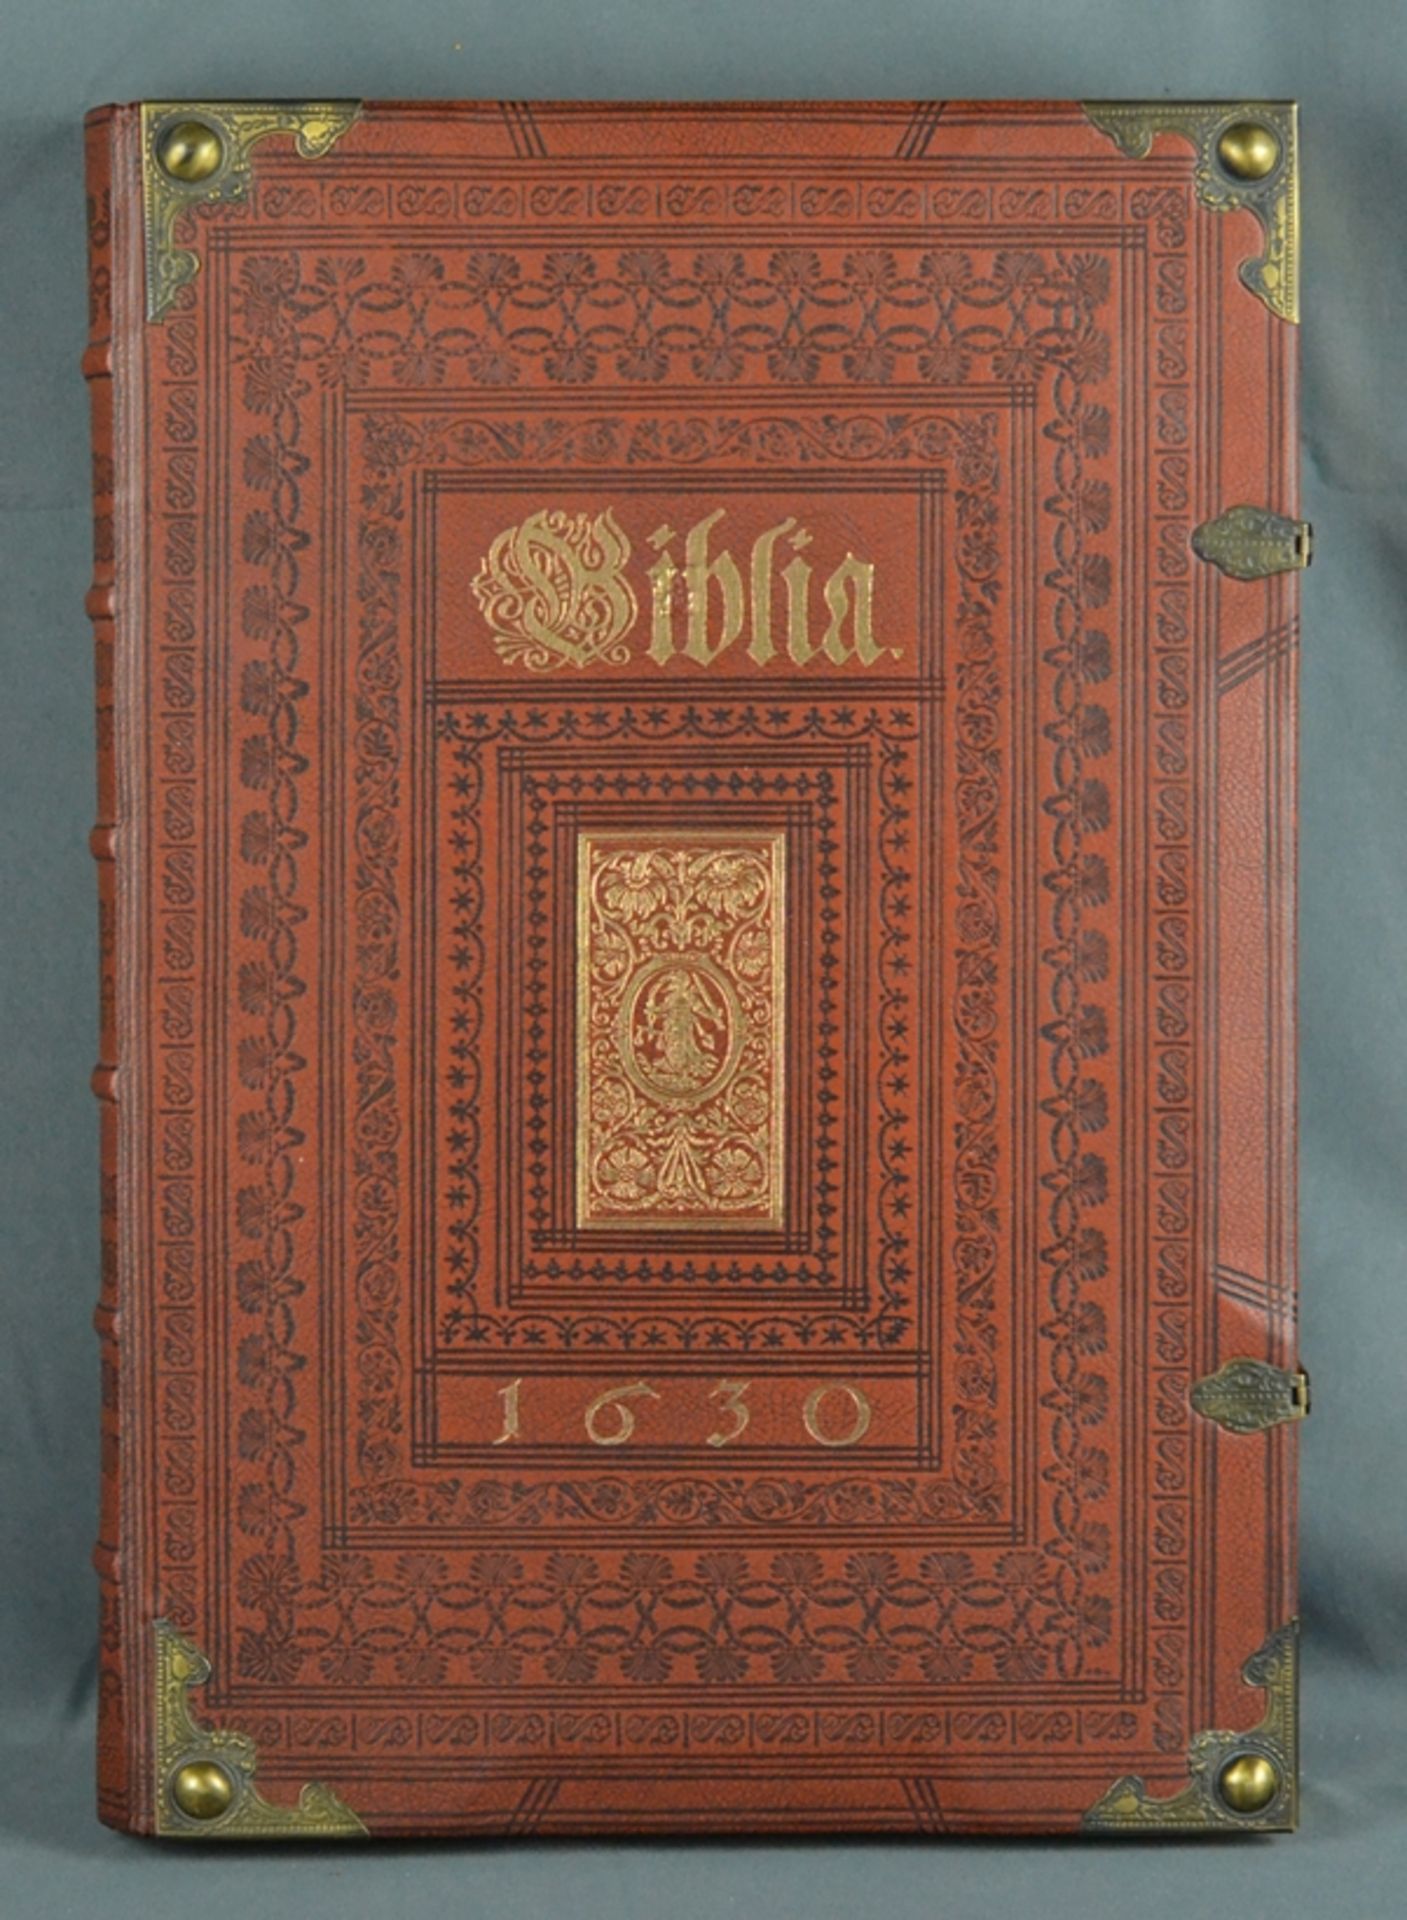 Biblia - Faksimile, Wiedergabe des neuen Testaments der Kupferbibel von Matthäus Merian, Straßburg - Image 2 of 5